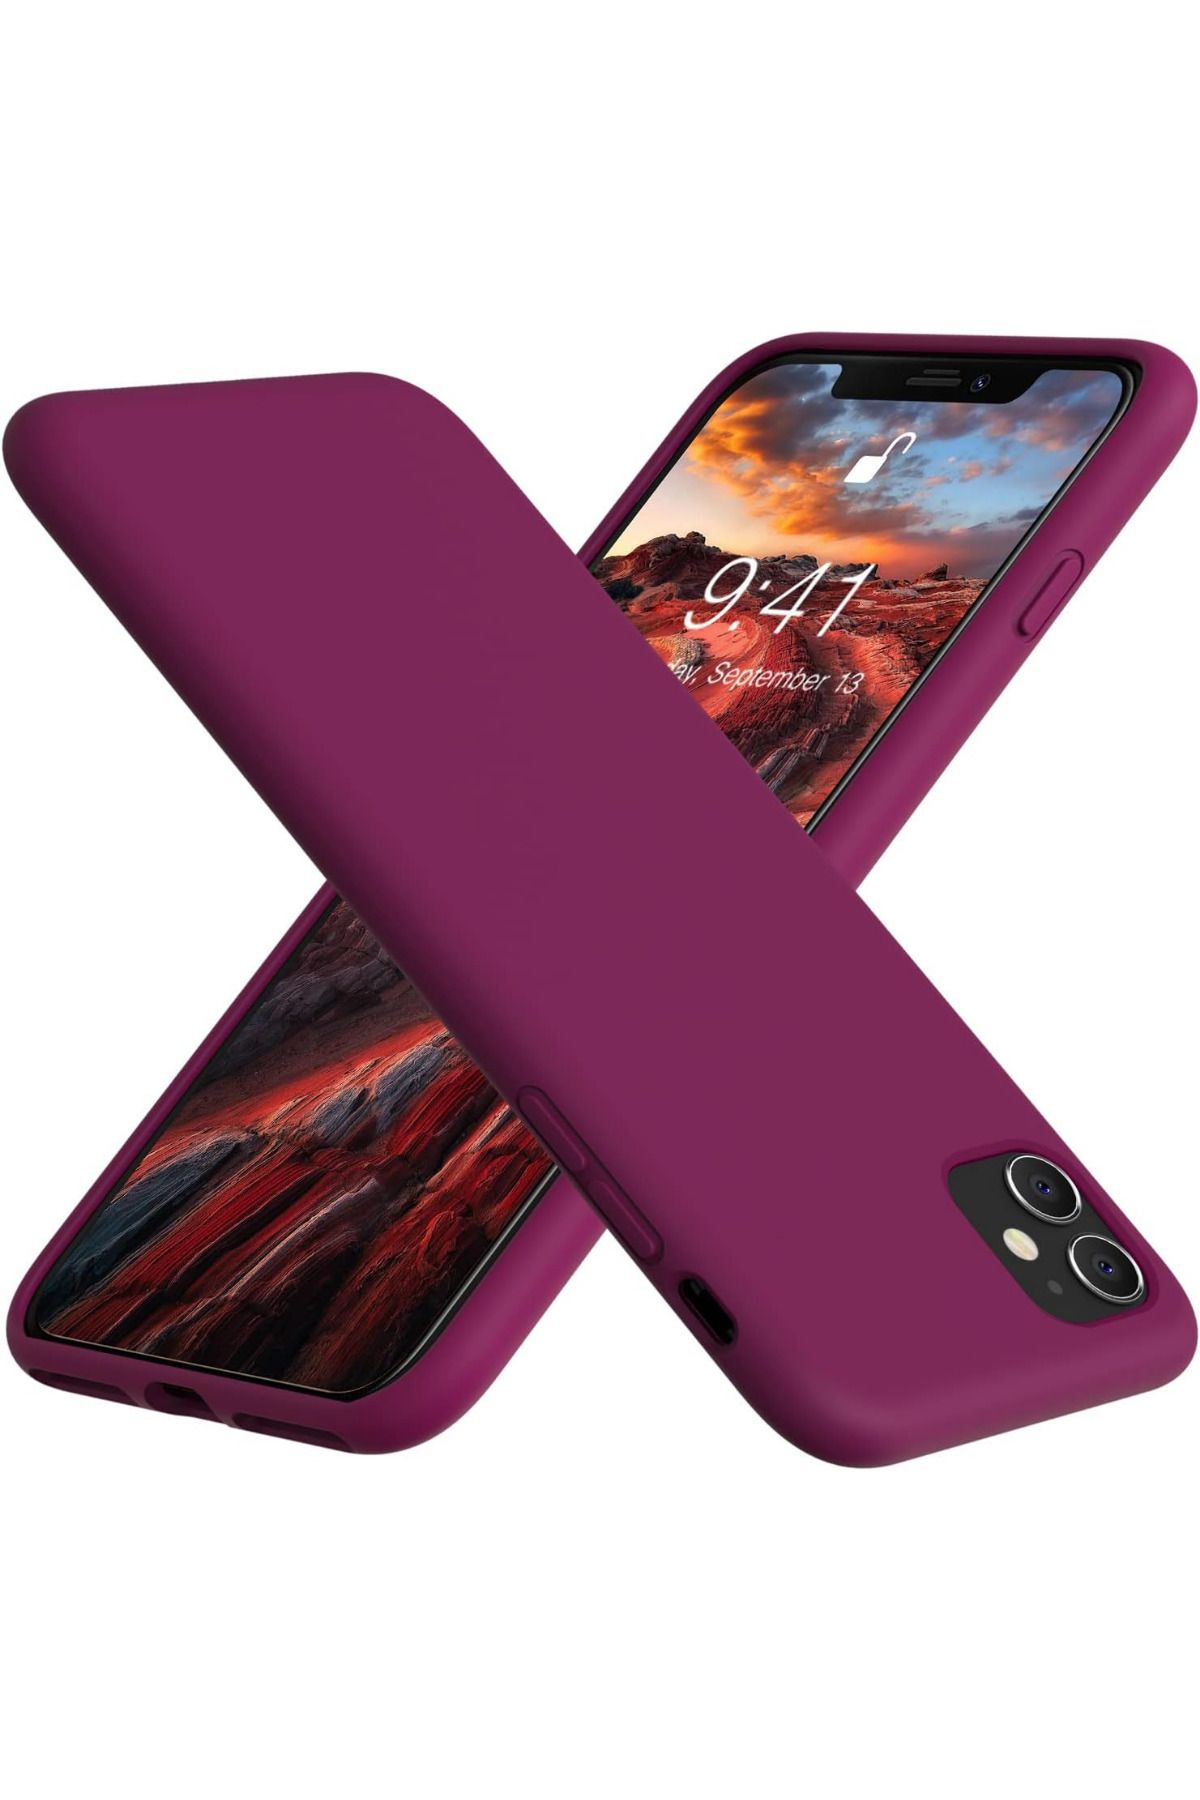 KVK PRİVACY Apple Iphone 11 Uyumlu Altı Kapalı Lansman Kılıf Kapak Bordo